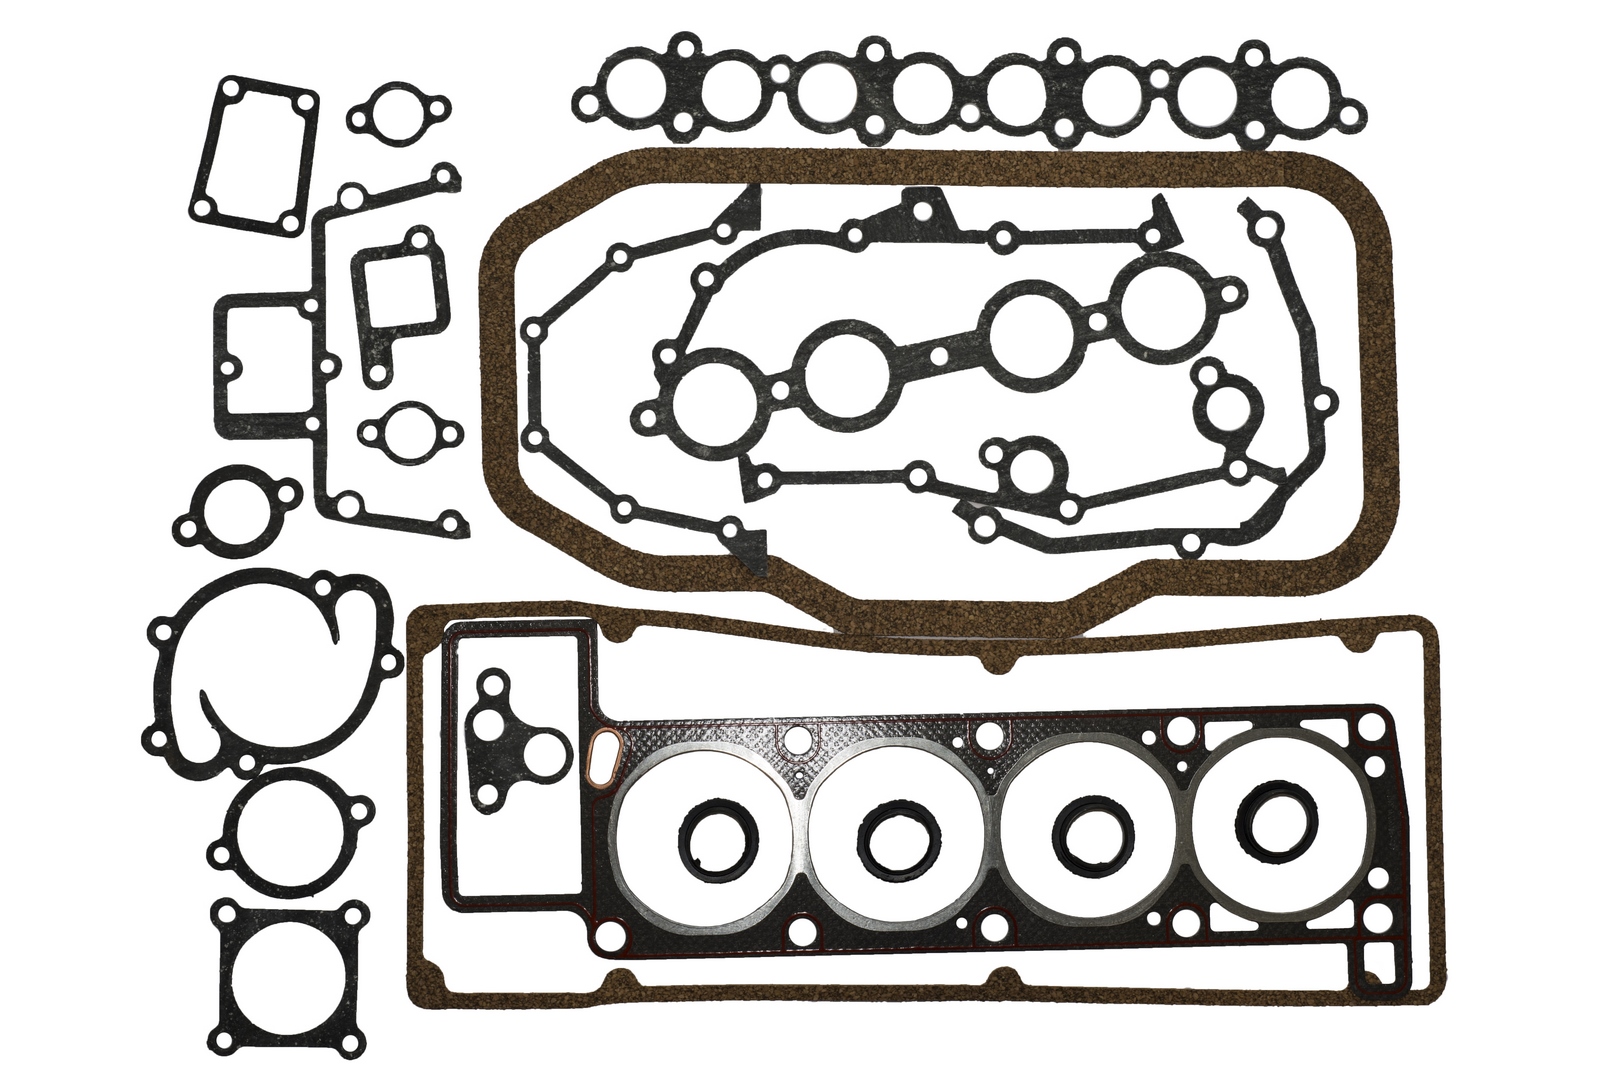 Прокладки двигателя ЗМЗ 409,-4052,-40522 (полный комплект с ПГБ, 19 позиций, с герметиком)